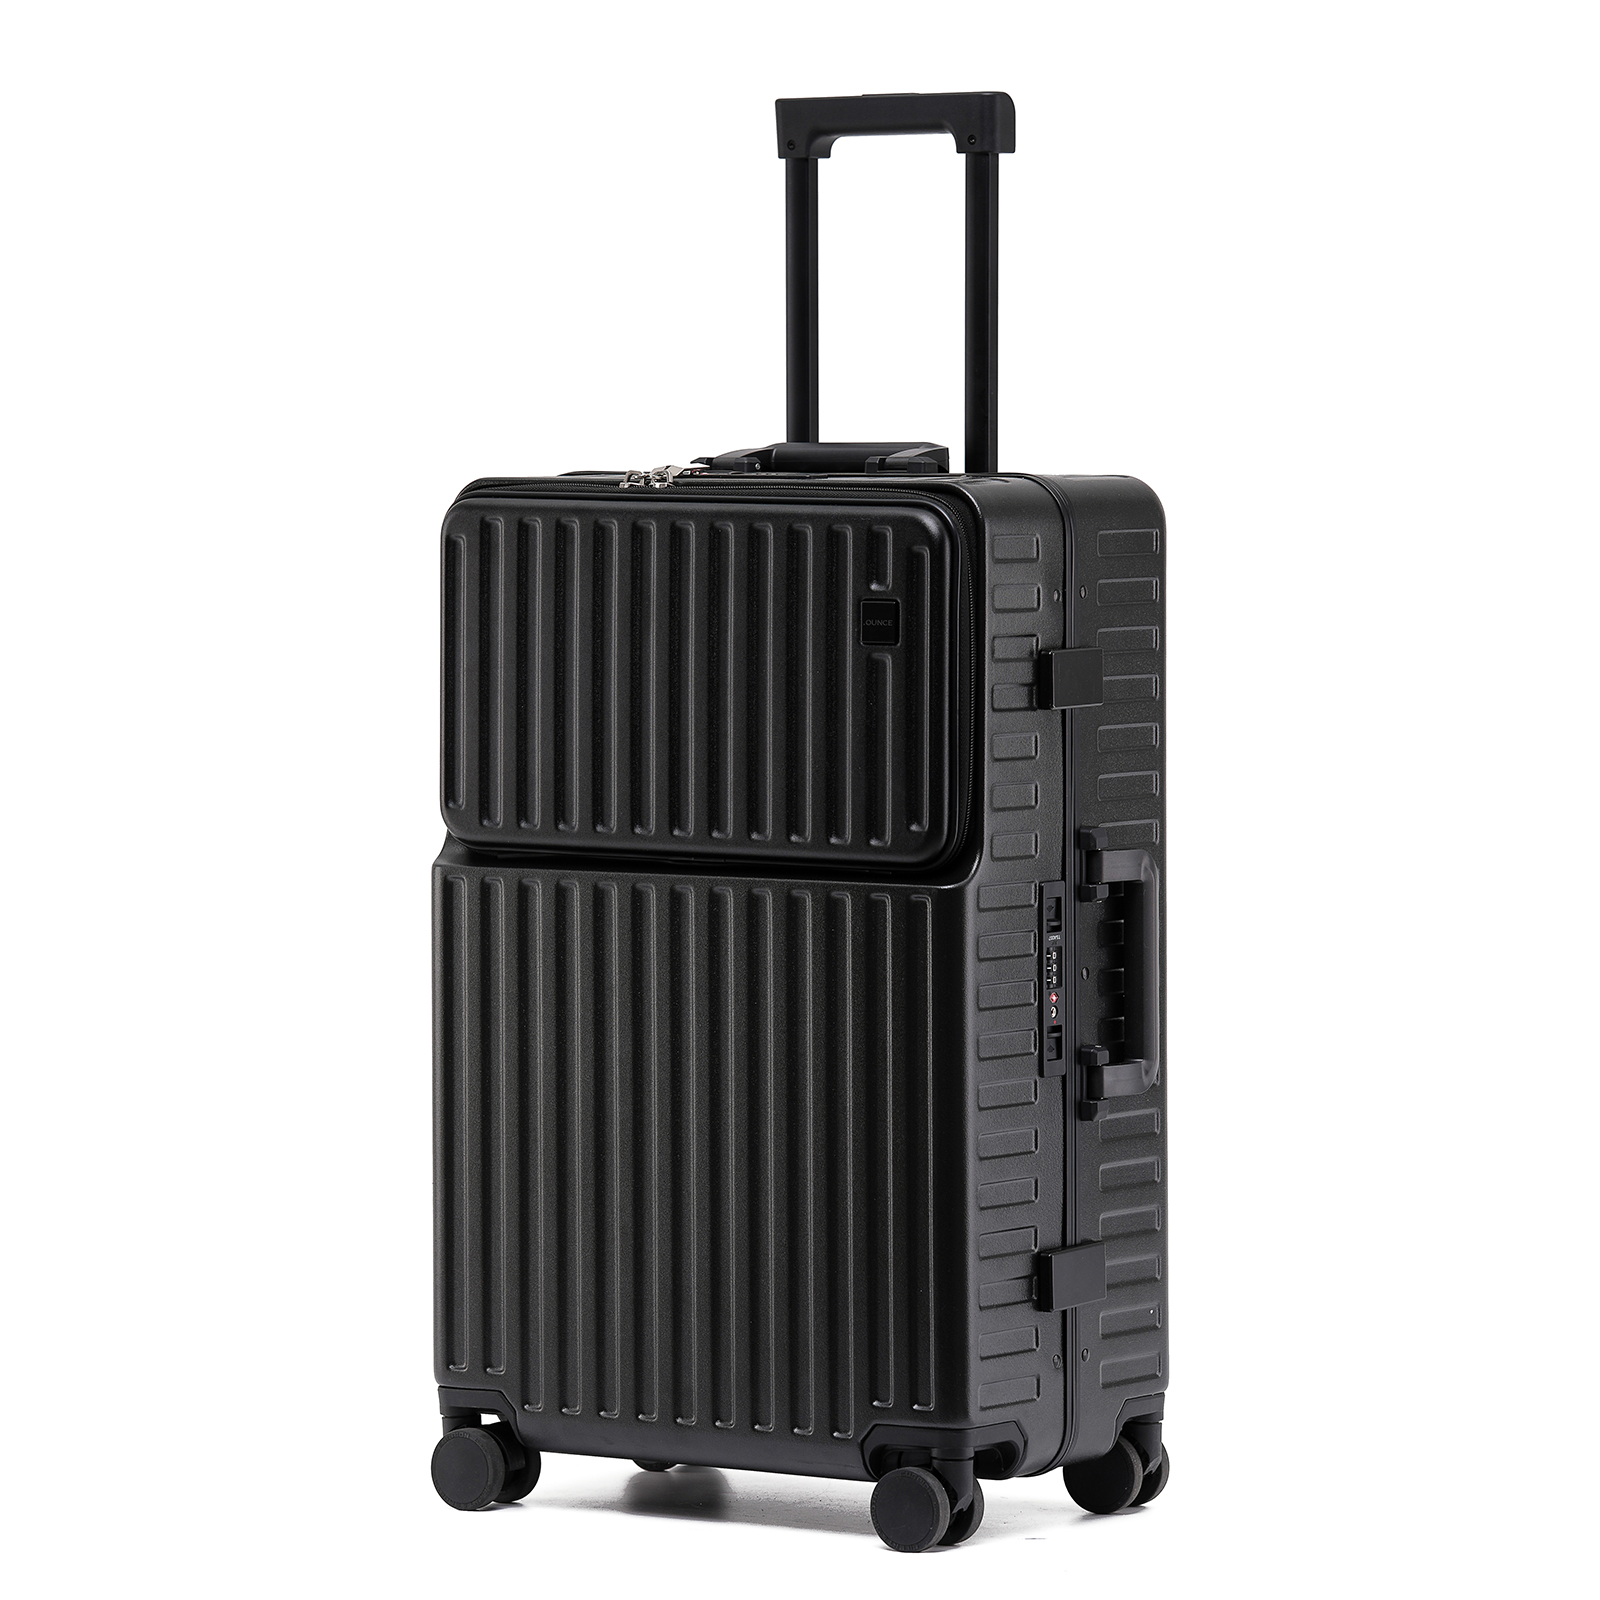 スーツケース 多機能 キャリーケース STYLISHJAPAN 公式 機内持ち込み アルミフレーム カップホルダー フロントポケット Mサイズ  .OUNCE mfsc2067-m